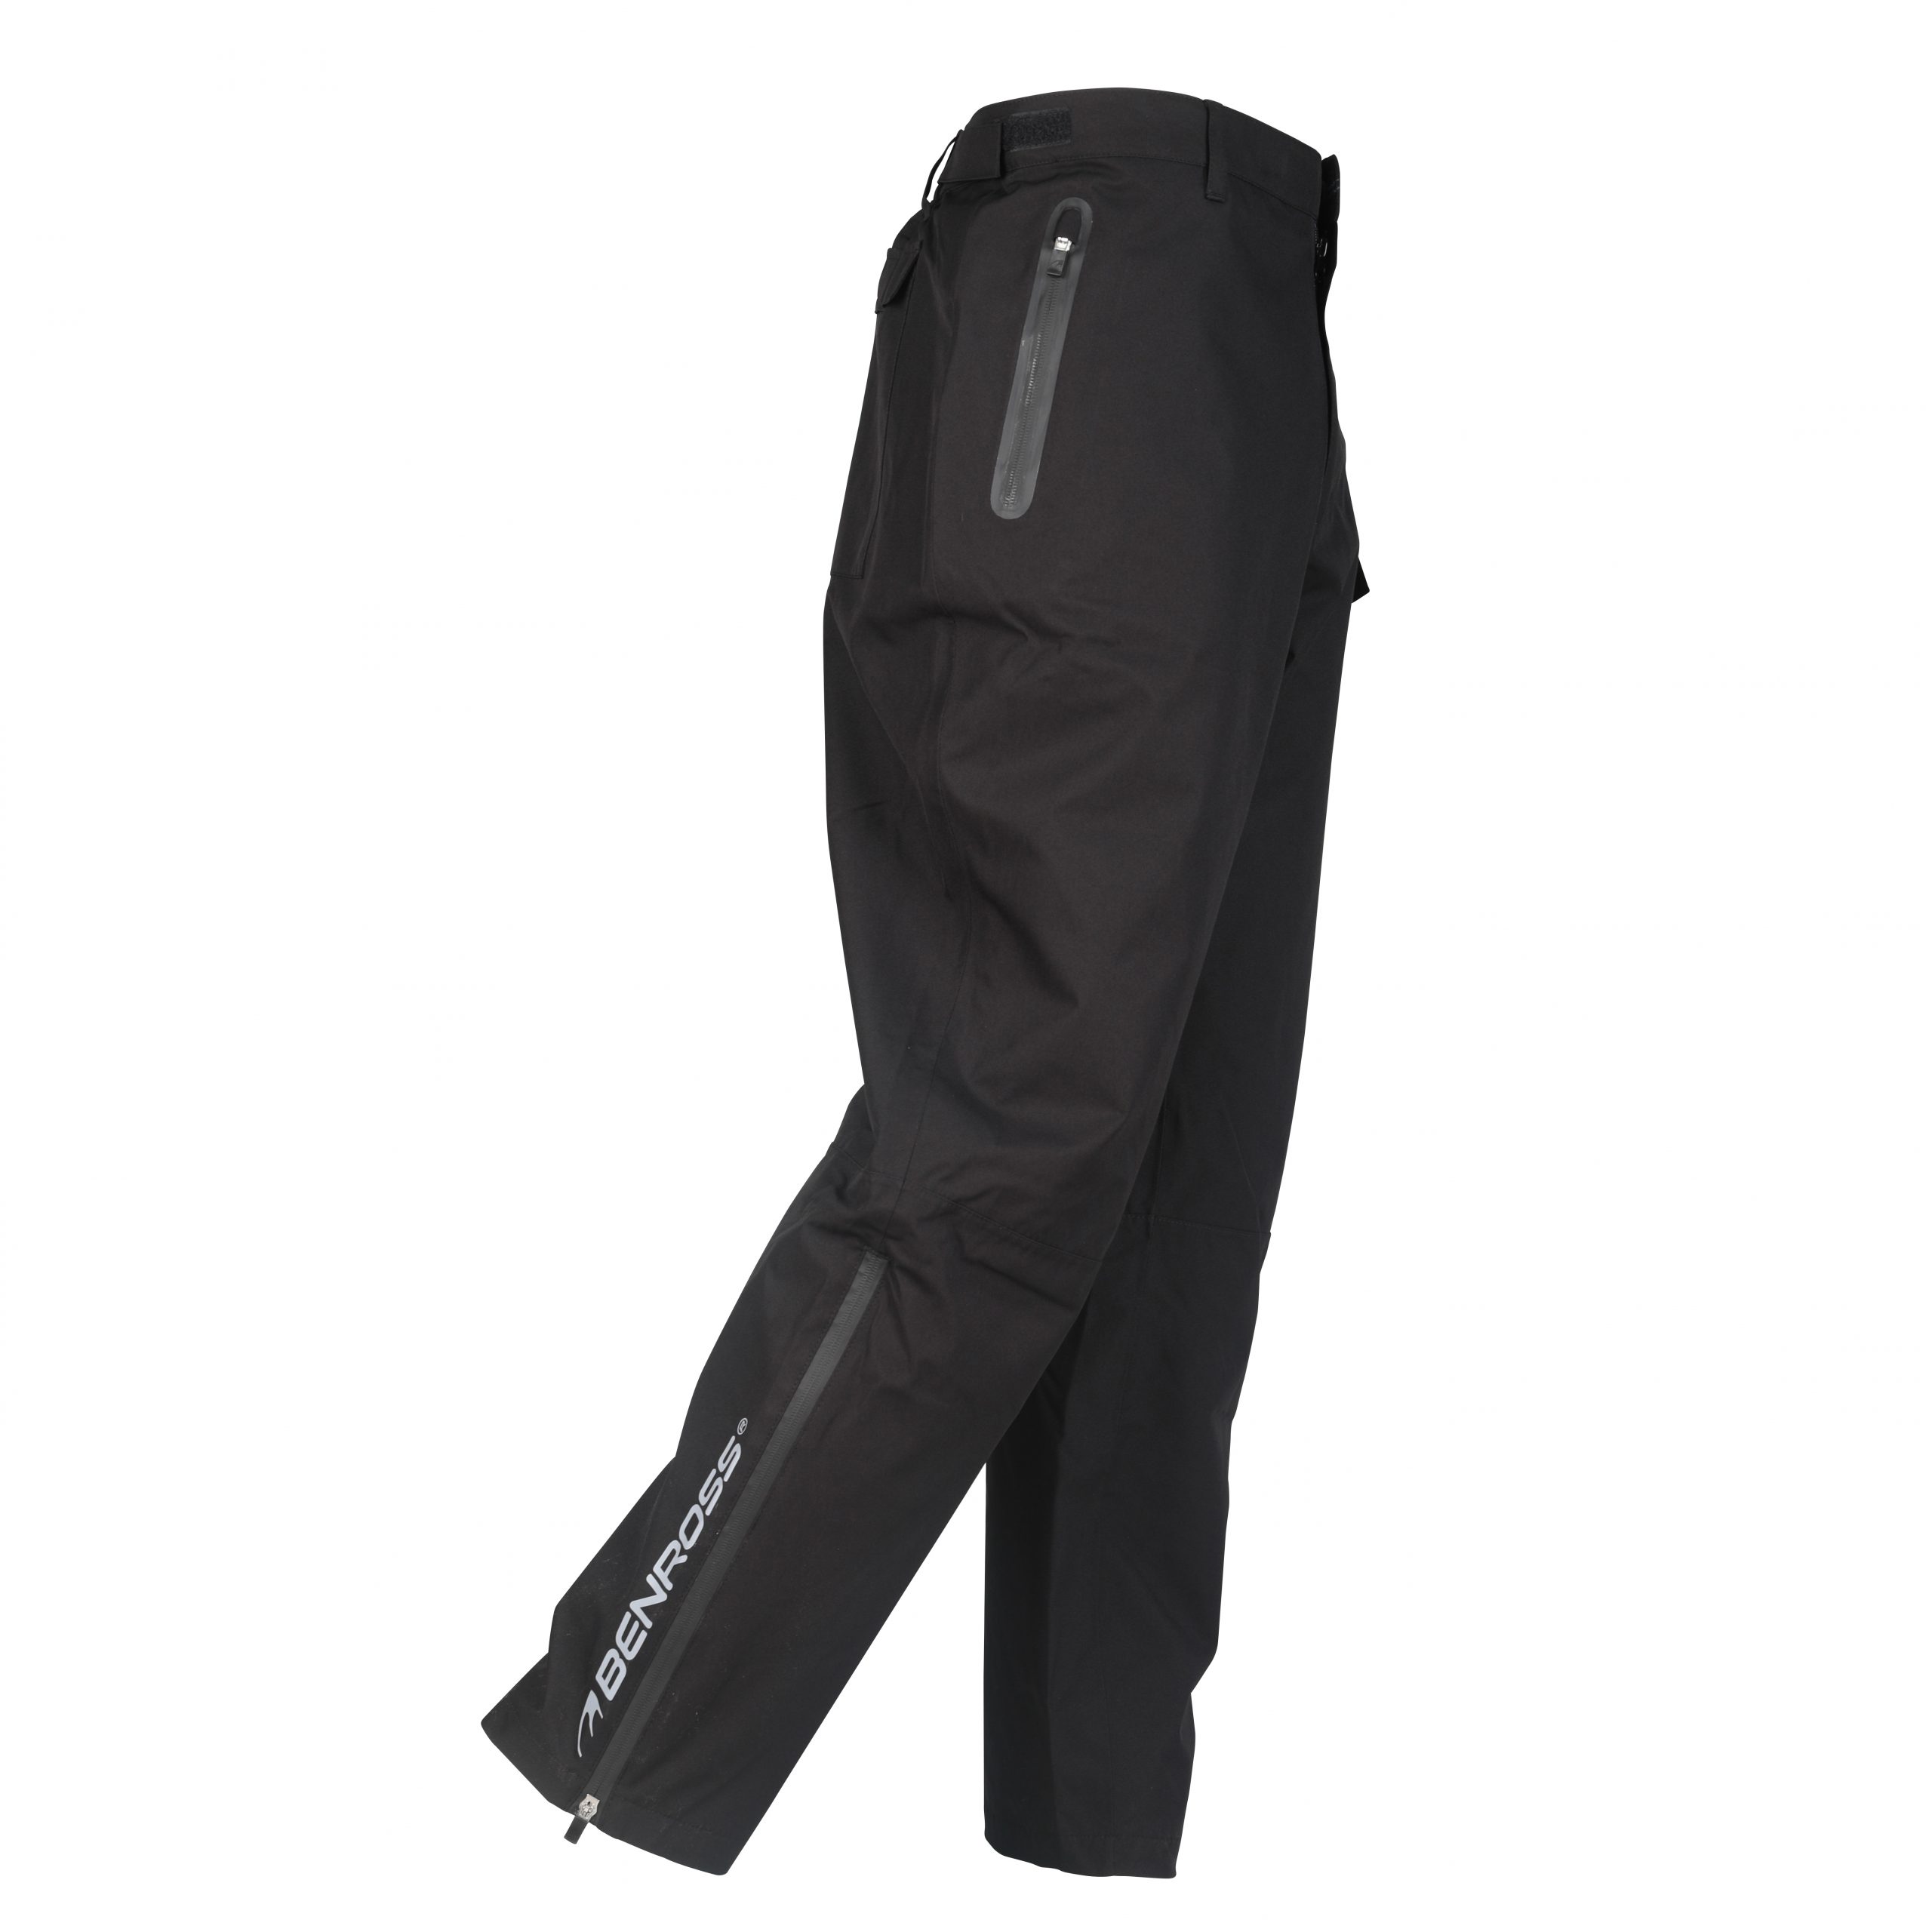 Benross Hydro Pro X Waterproof Trousers